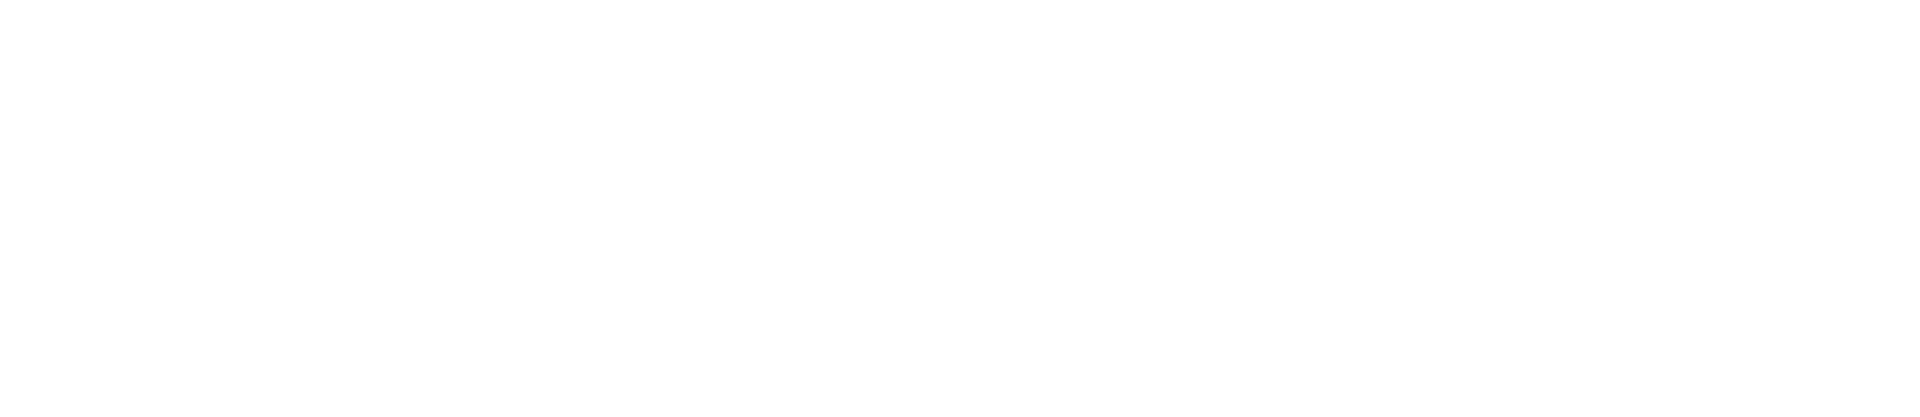 net powersafe logo